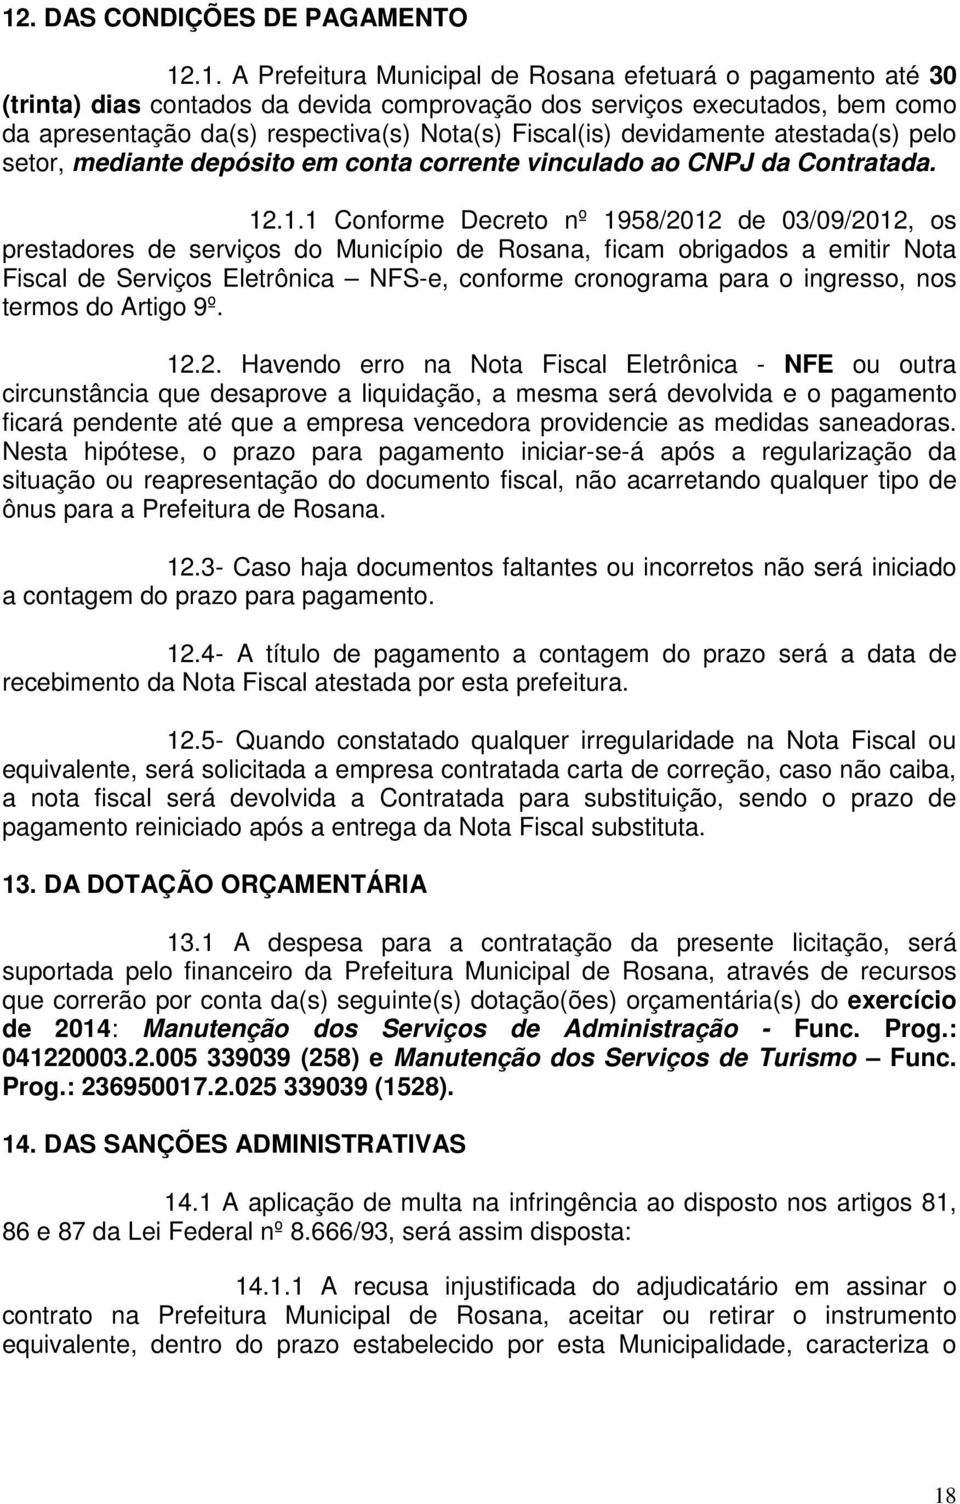 .1.1 Conforme Decreto nº 1958/2012 de 03/09/2012, os prestadores de serviços do Município de Rosana, ficam obrigados a emitir Nota Fiscal de Serviços Eletrônica NFS-e, conforme cronograma para o